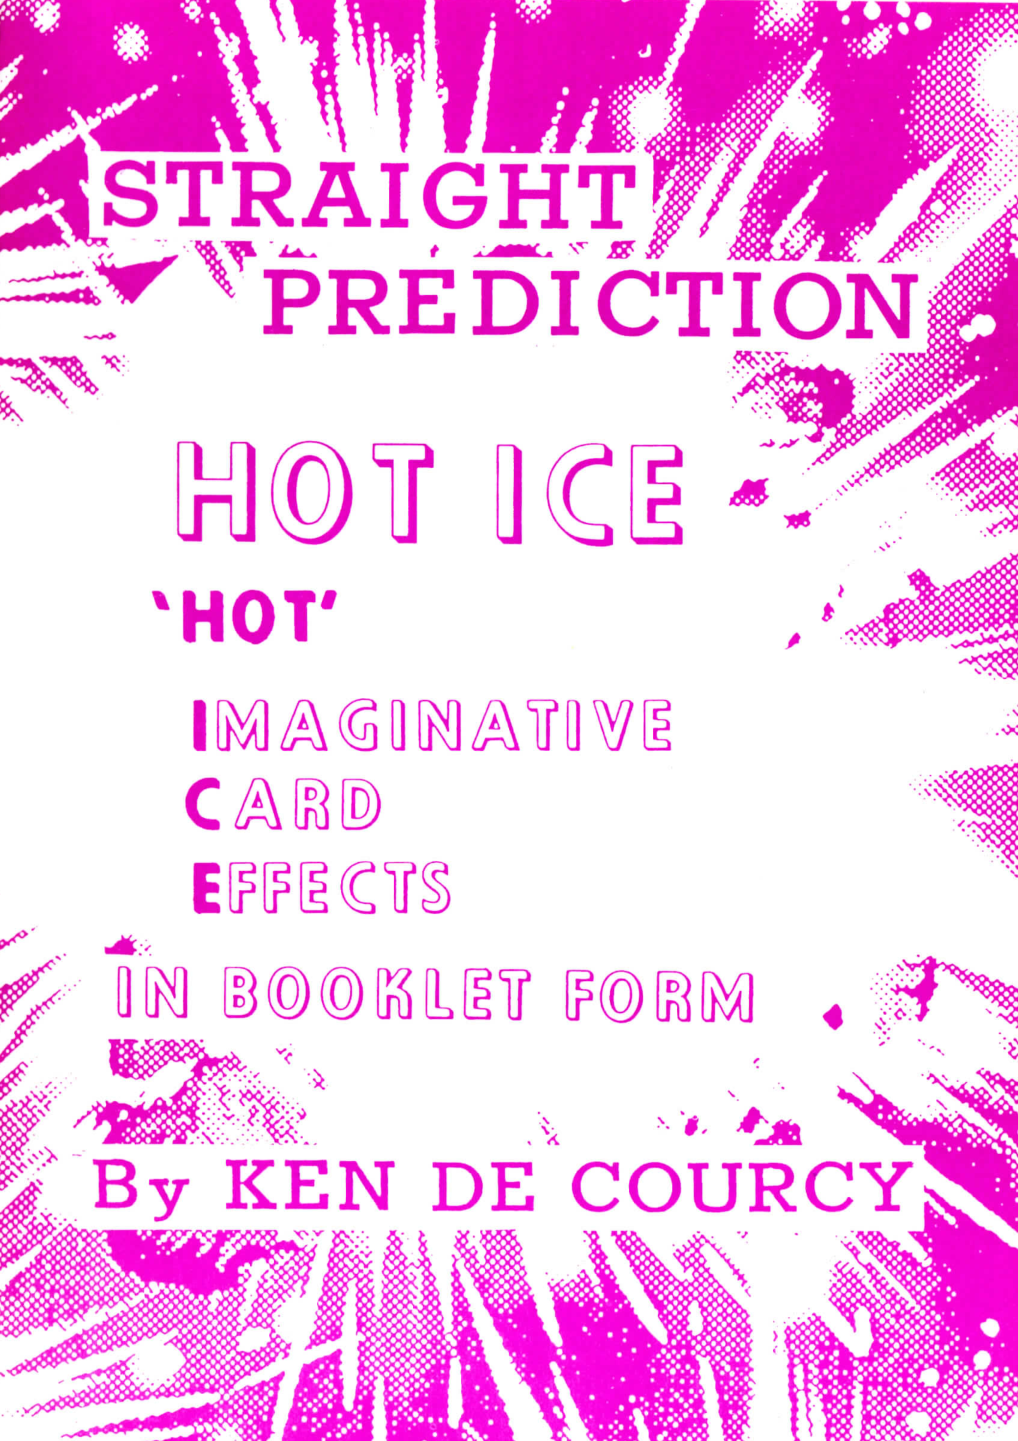 Ken de Courcy - Hot Ice 4